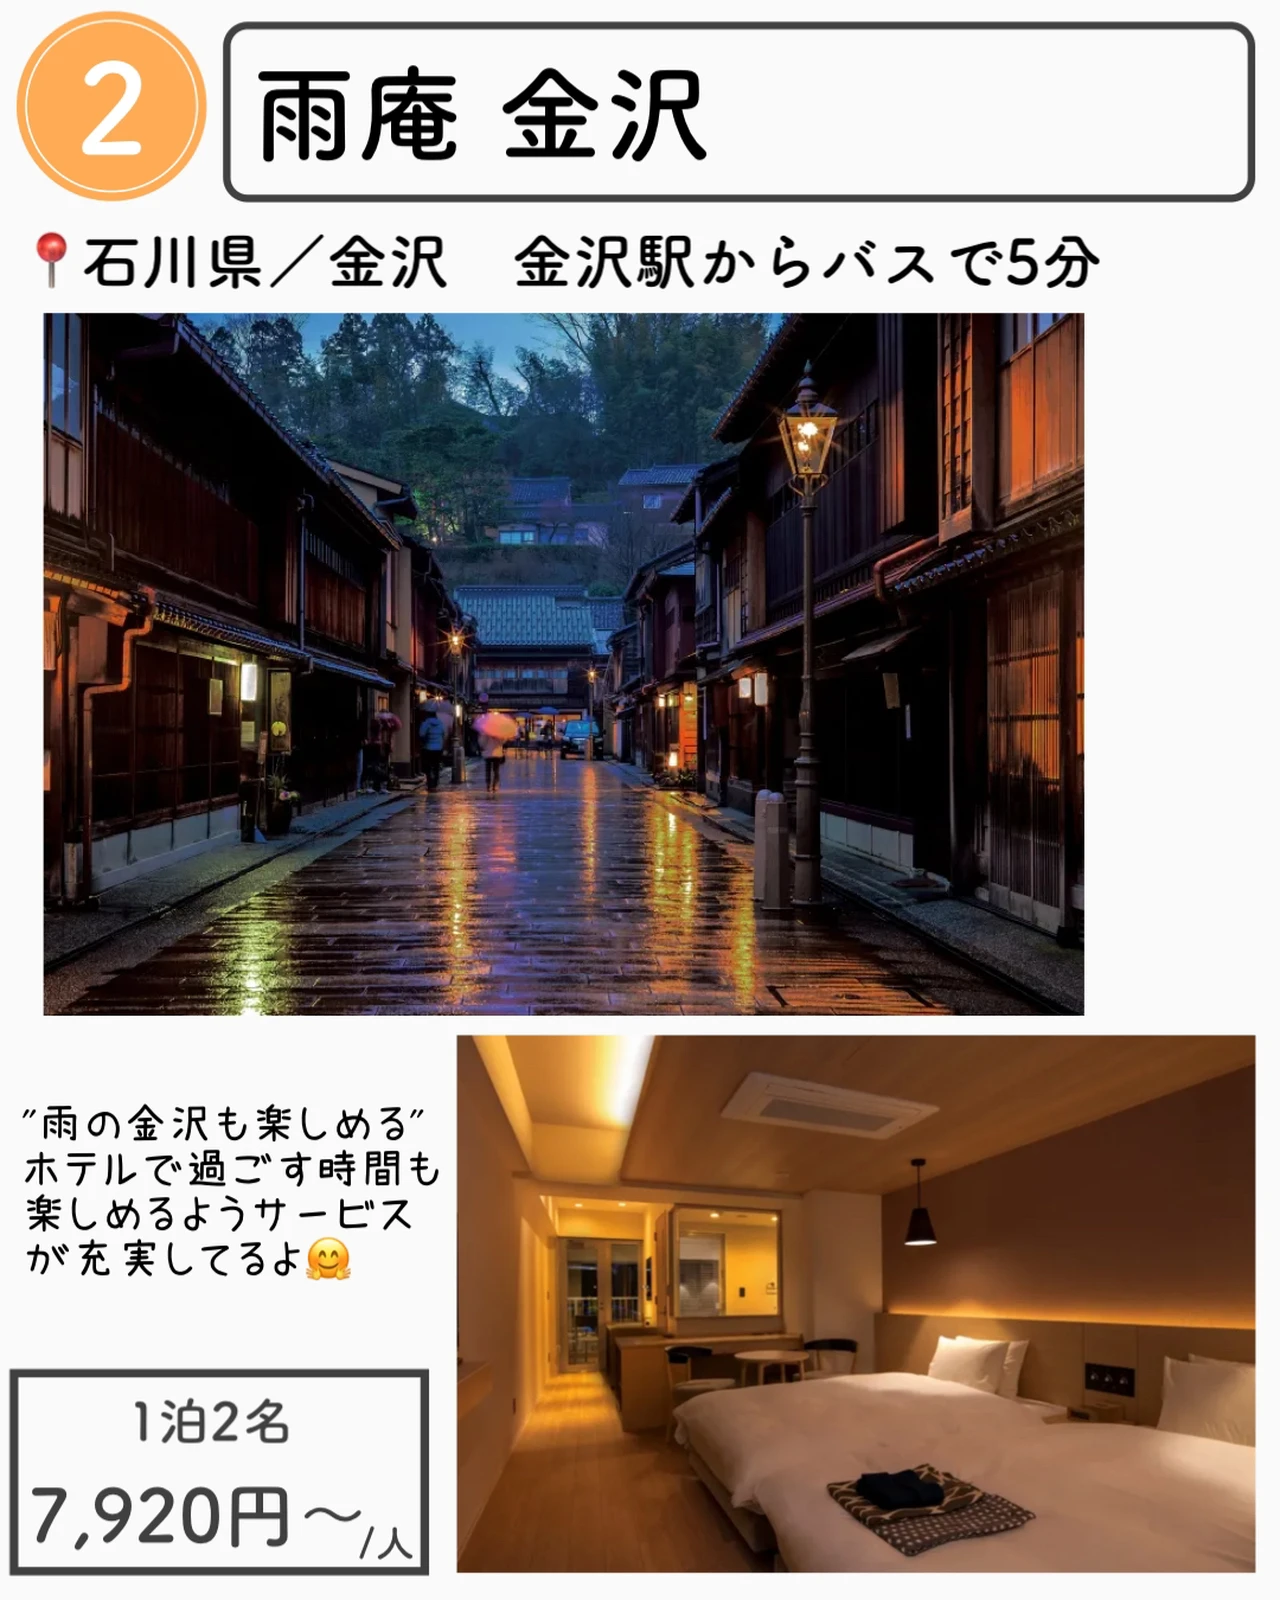 石川 金沢の神コスパホテル7選 1万円以下 もえ 旅するol Ig6万人が投稿したフォトブック Lemon8